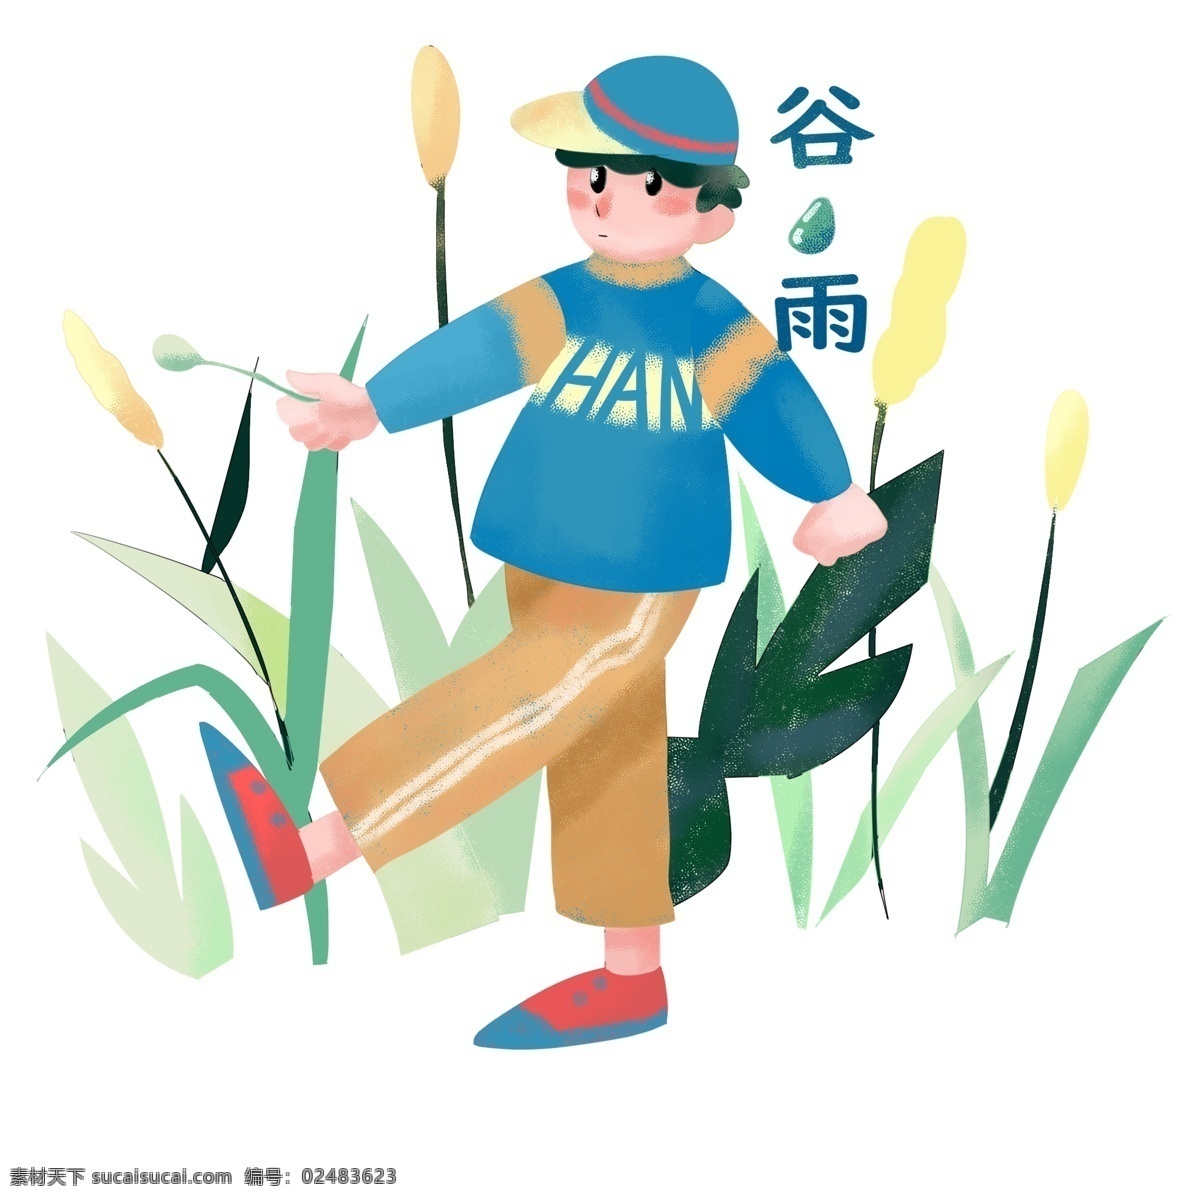 谷雨 散步 小 男孩 谷雨人物插画 散步的小男孩 蓝色的帽子 绿色的叶子 植物装饰 卡通人物